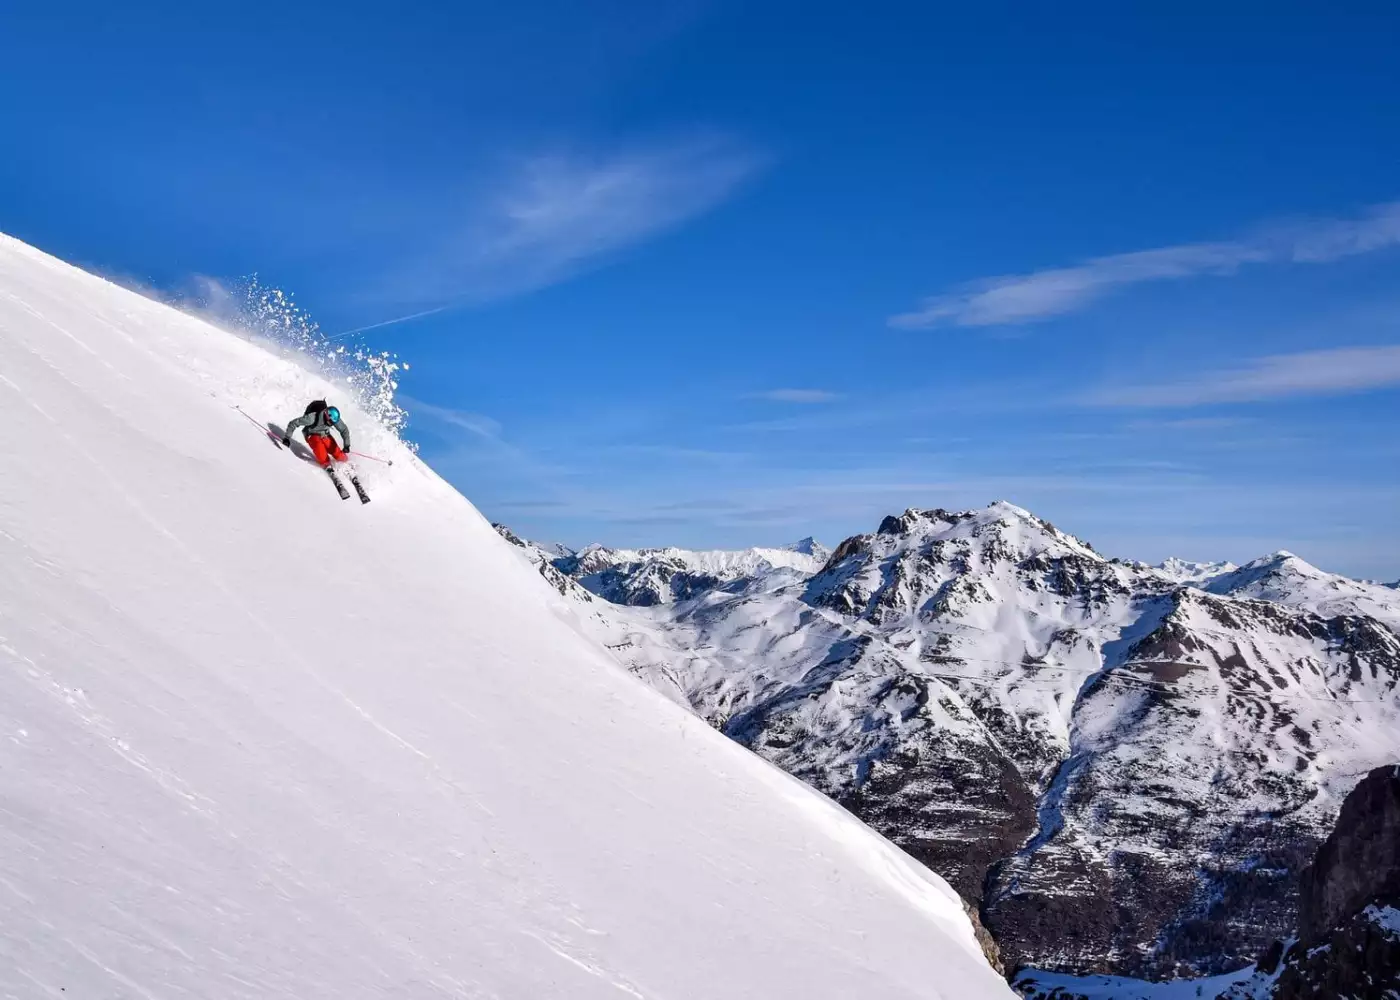 Winter 2022/2023 ski lift prices